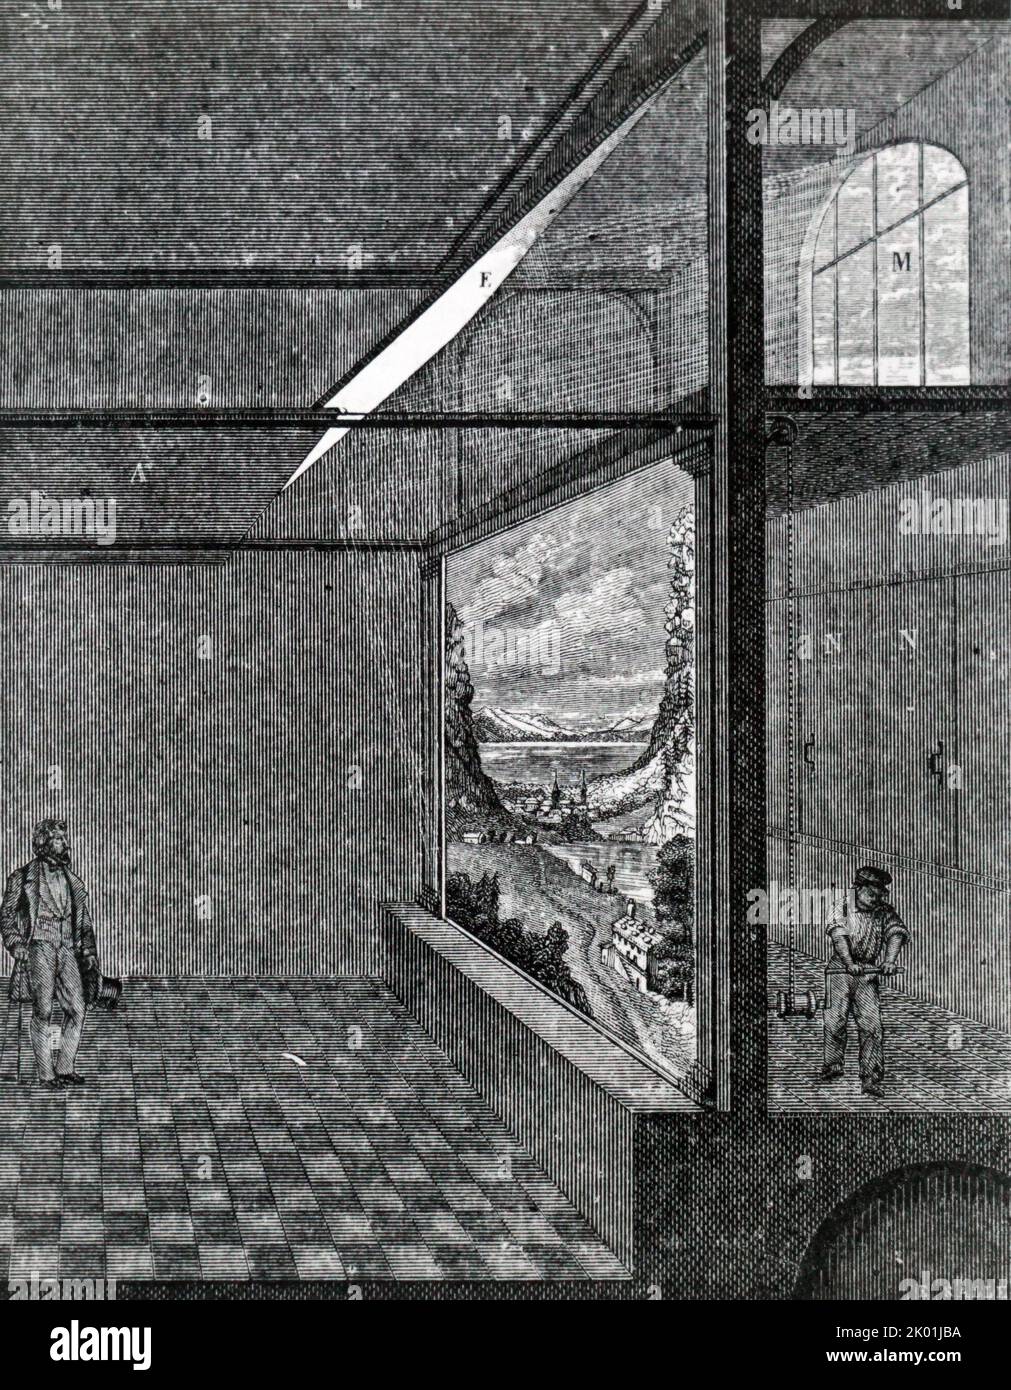 Das Diorama, erfunden von Daguerre. Ein Bild wurde auf die Stofffront gemalt und durch das Fenster M beleuchtet, das vom Spiegel E reflektiert wurde; der Verschluss A konnte lautlos hinüber bewegt werden, um Licht auszuschneiden. Das zweite Bild wurde auf die Rückseite des Stoffes gemalt und als die Fensterläden N, N geöffnet wurden, wurde das zweite Bild beleuchtet. Aus Einer Ganot-Naturphilosophie, London, 1887. Stockfoto